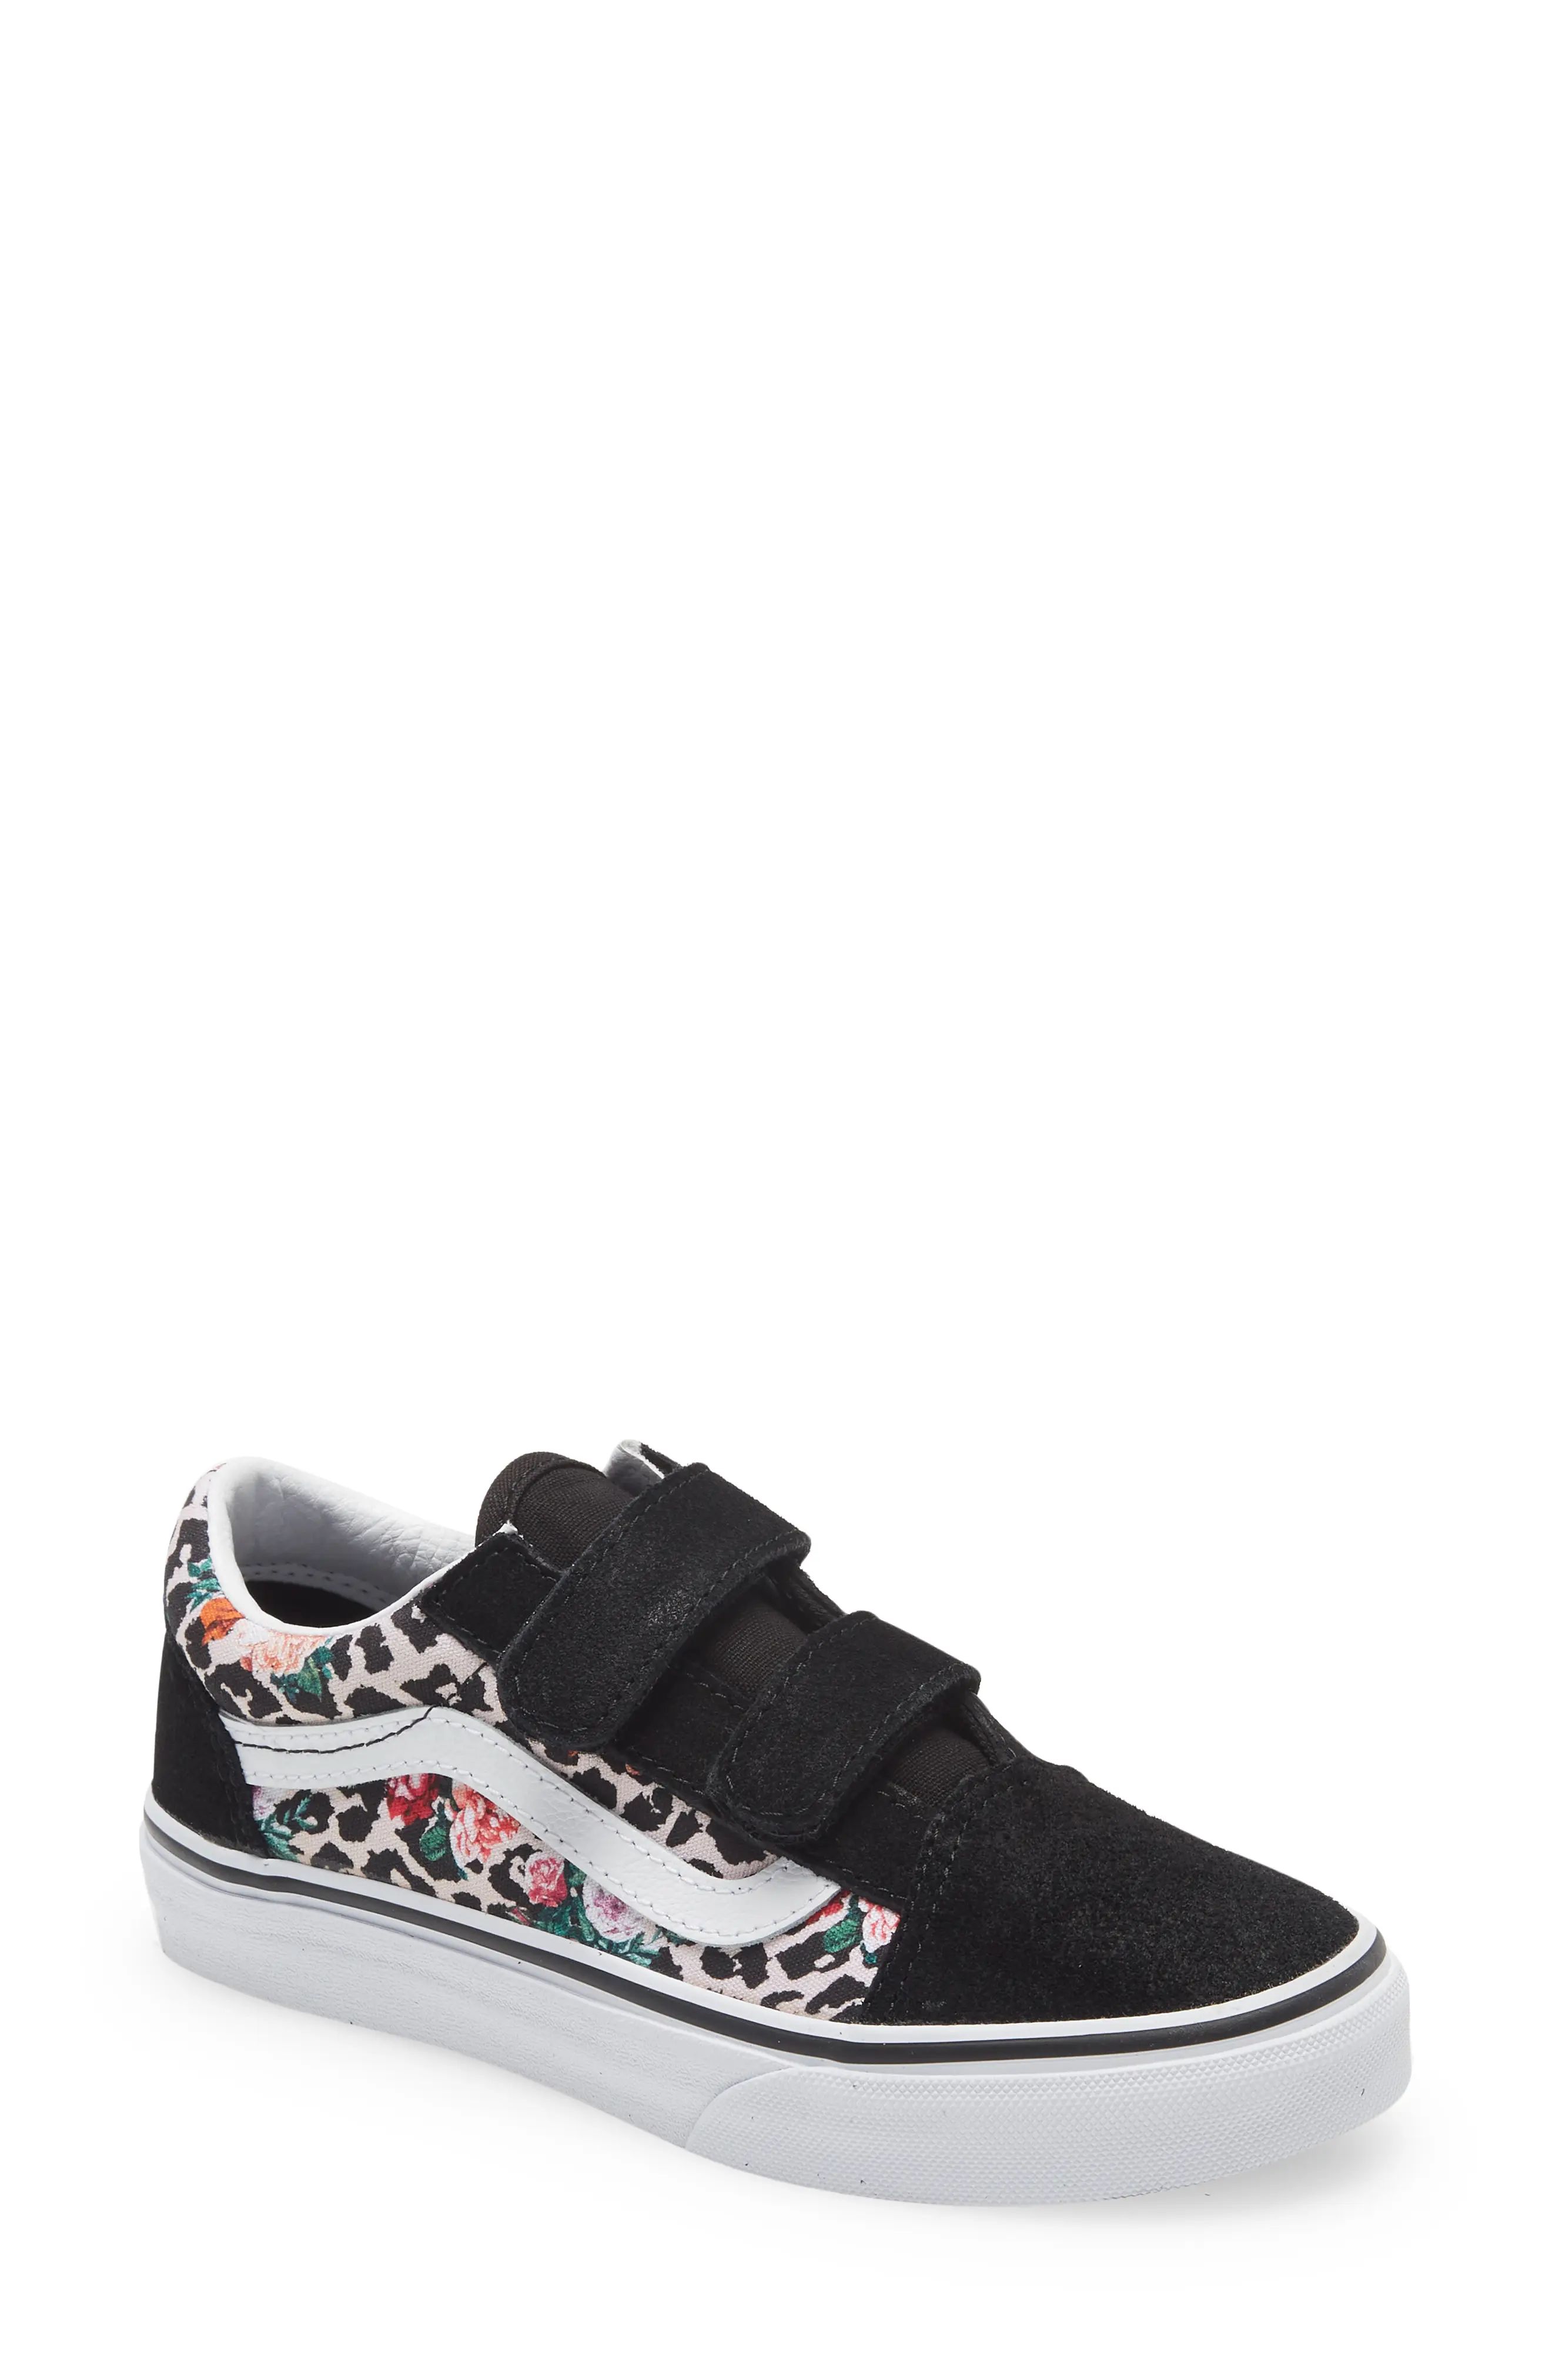 Vans Old Skool Floral Animal Print Sneaker, Size 6 M in Leopard Floral Black/White at Nordstrom | Nordstrom